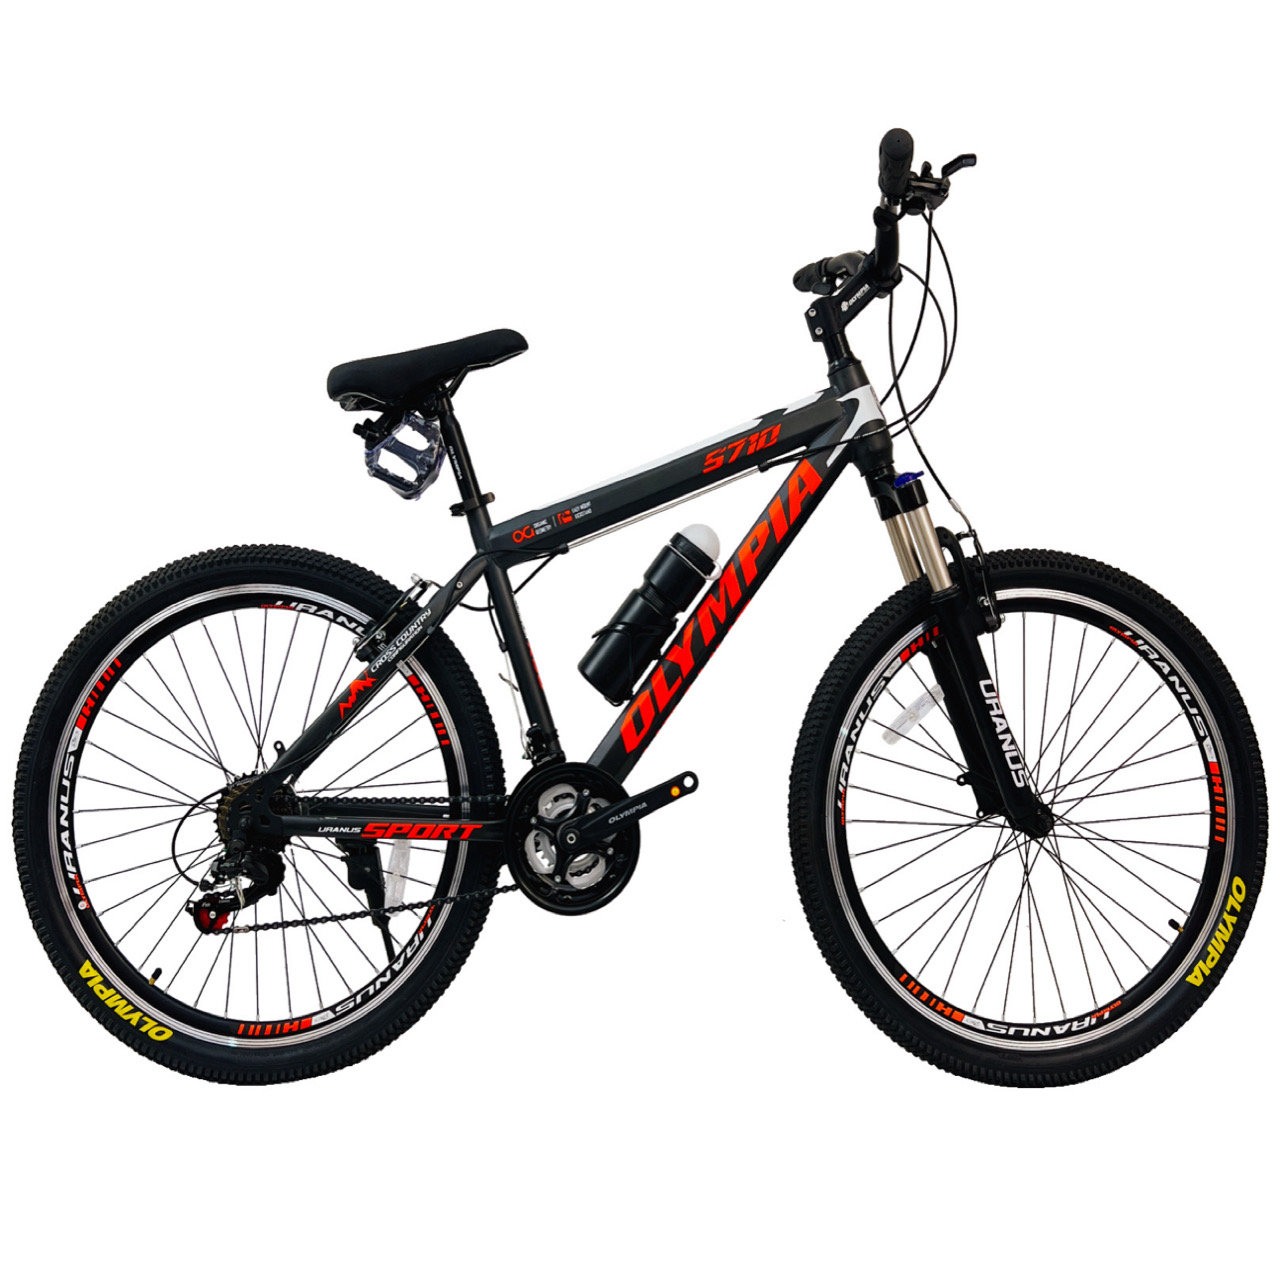 نکته خرید - قیمت روز دوچرخه کوهستان المپیا مدل STEEL SPORT کد 5710 سایز طوقه 26 خرید